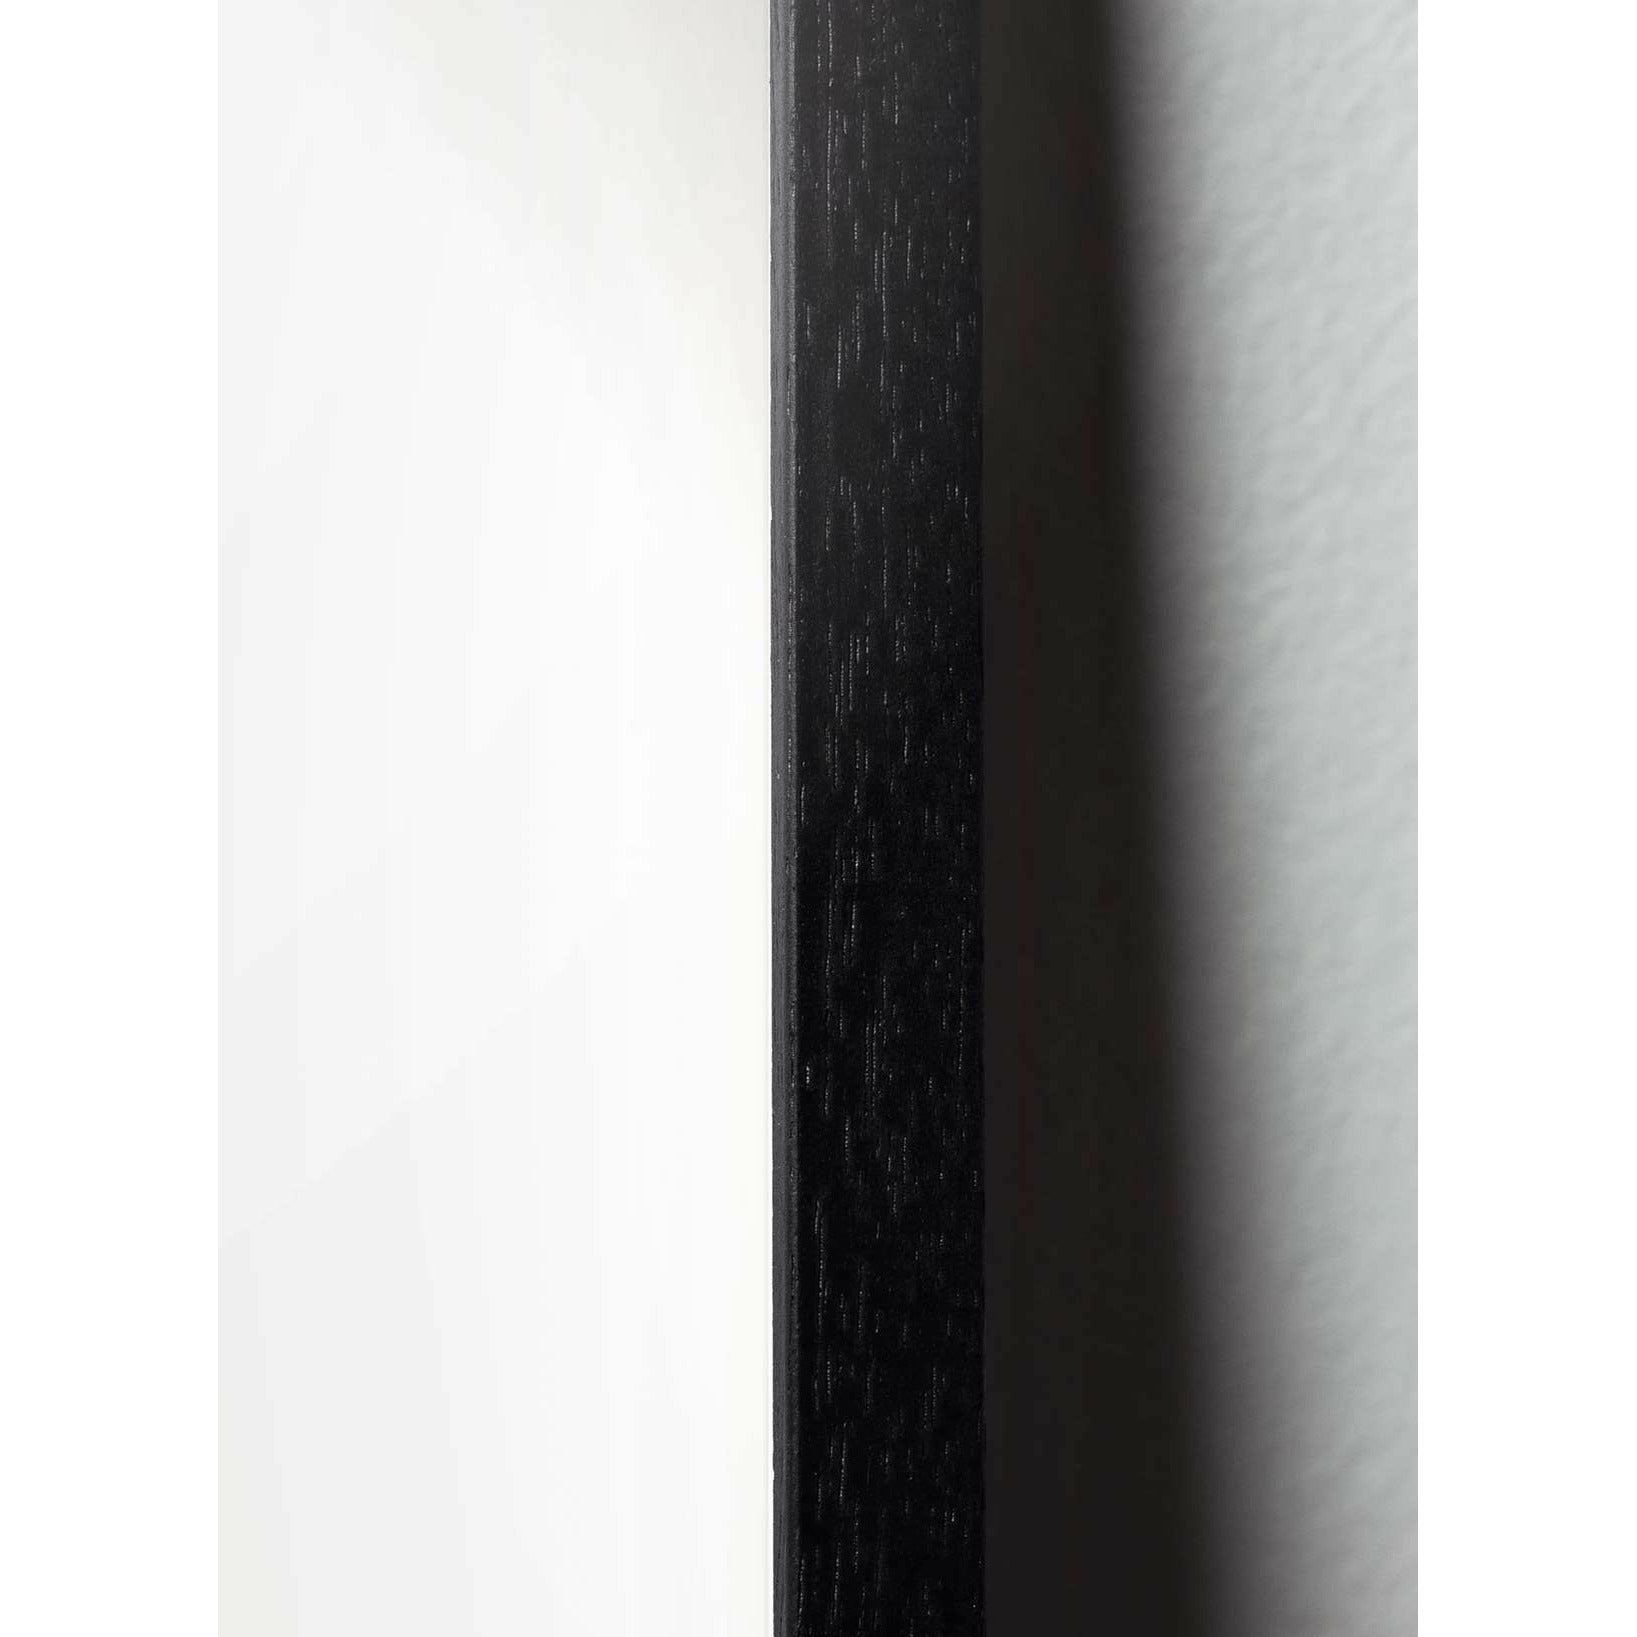 Pomysły kropi klasyczny plakat, rama w czarnym lakierowanym drewnie 30x40 cm, ciemnoniebieskie tło